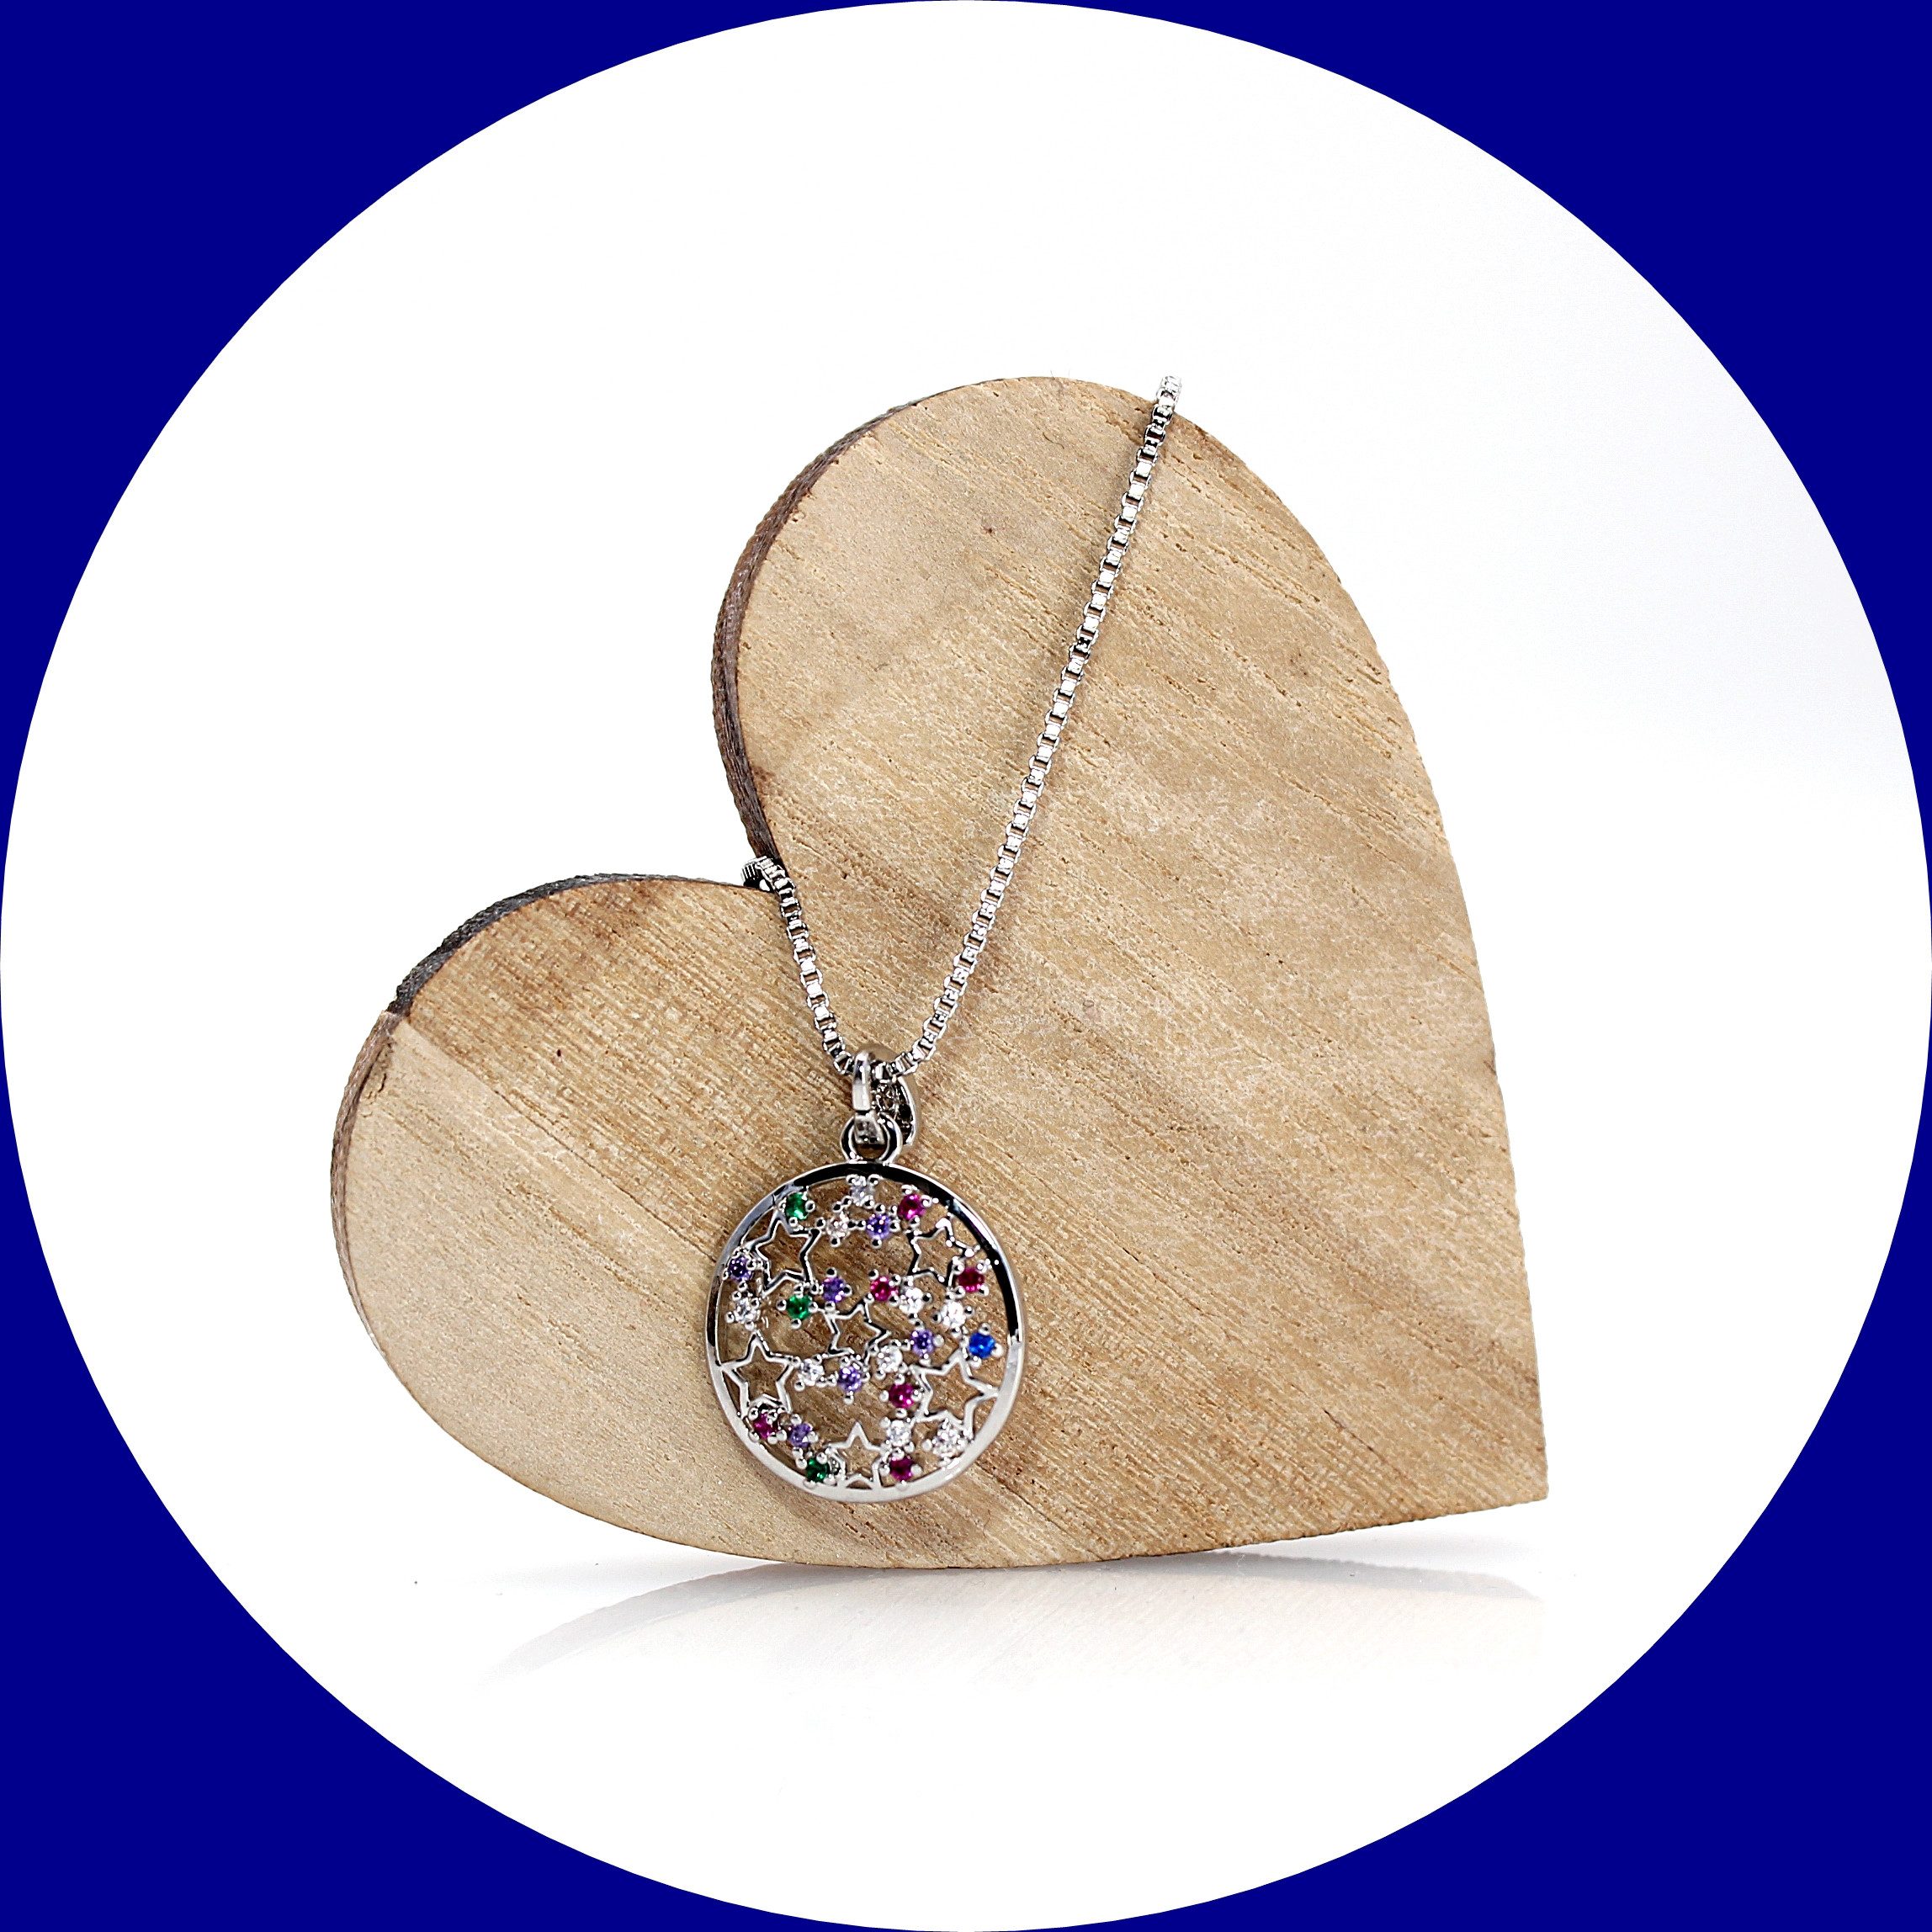 ELLAWIL Edelstahlkette Halskette Sternen Anhänger mit bunten Steinen Venezianerkette (Kettenlänge 40 cm, verlängerbar um 6 cm, Edelstahl), inklusive Geschenkschachtel